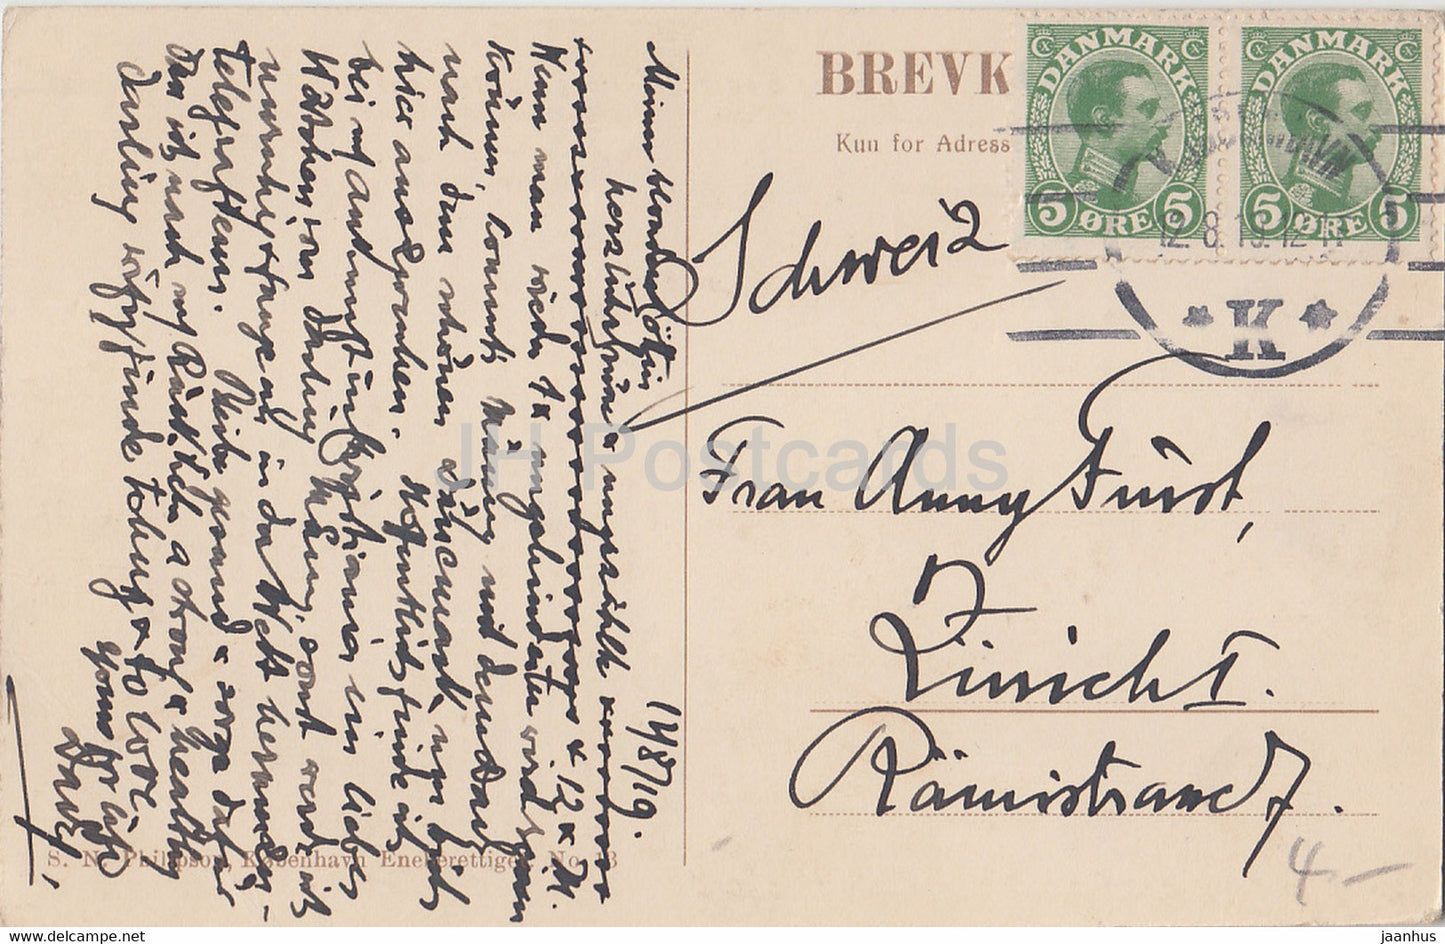 Kopenhagen - Kobenhavn - Amalienborg med HM Kongens Residens - alte Postkarte - 1919 - Dänemark - gebraucht